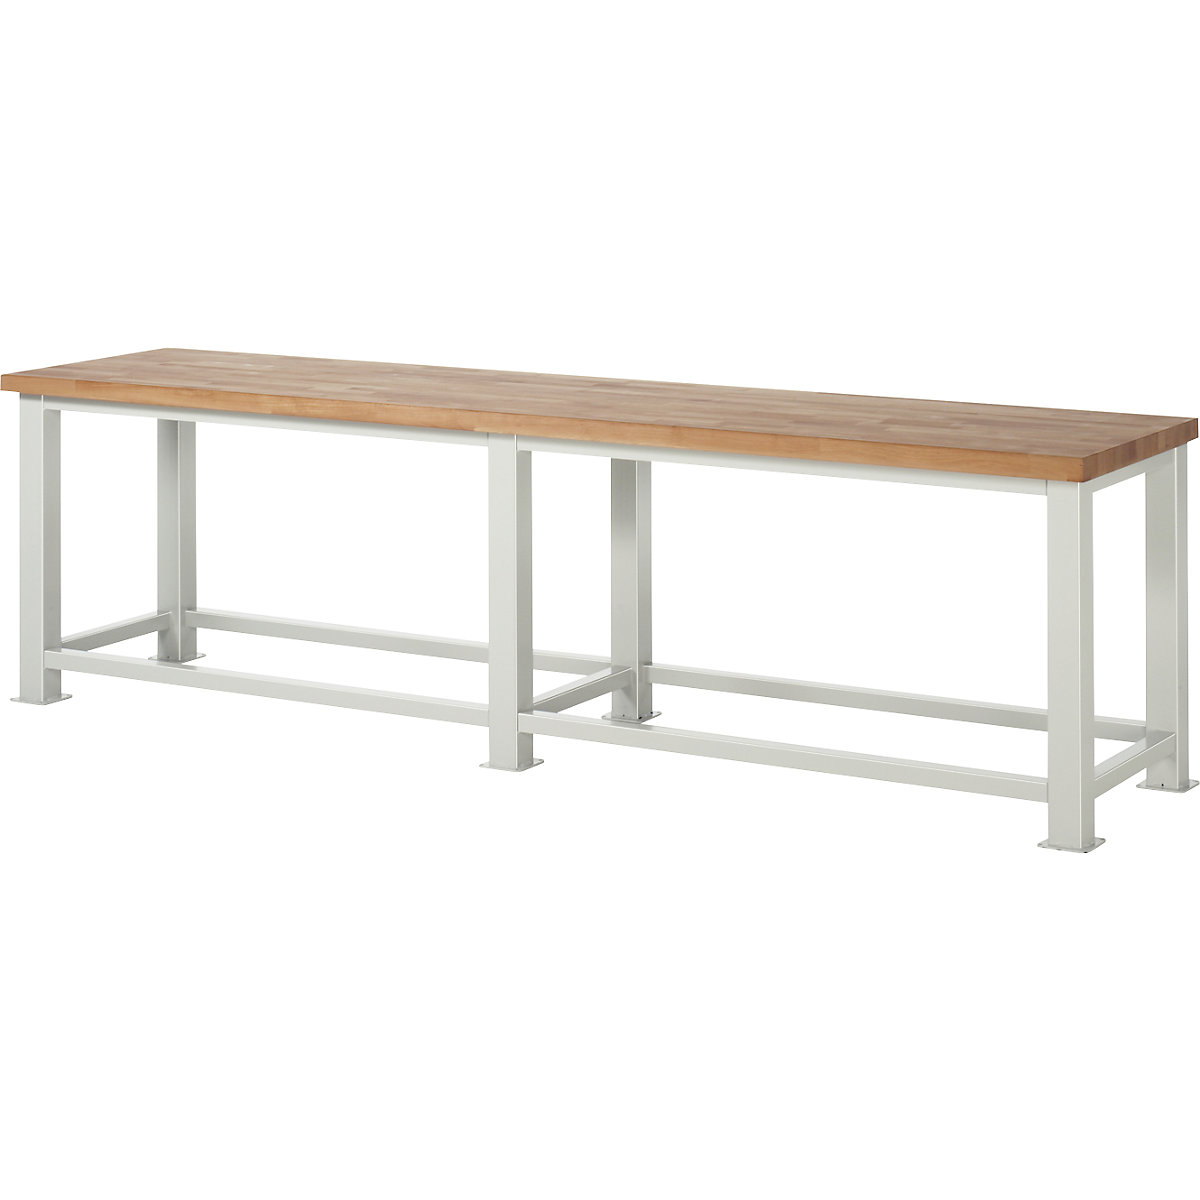 Stół warsztatowy do dużych obciążeń – RAU, grubość blatu: 50 mm, szer. x głęb. 3000 x 700 mm-3